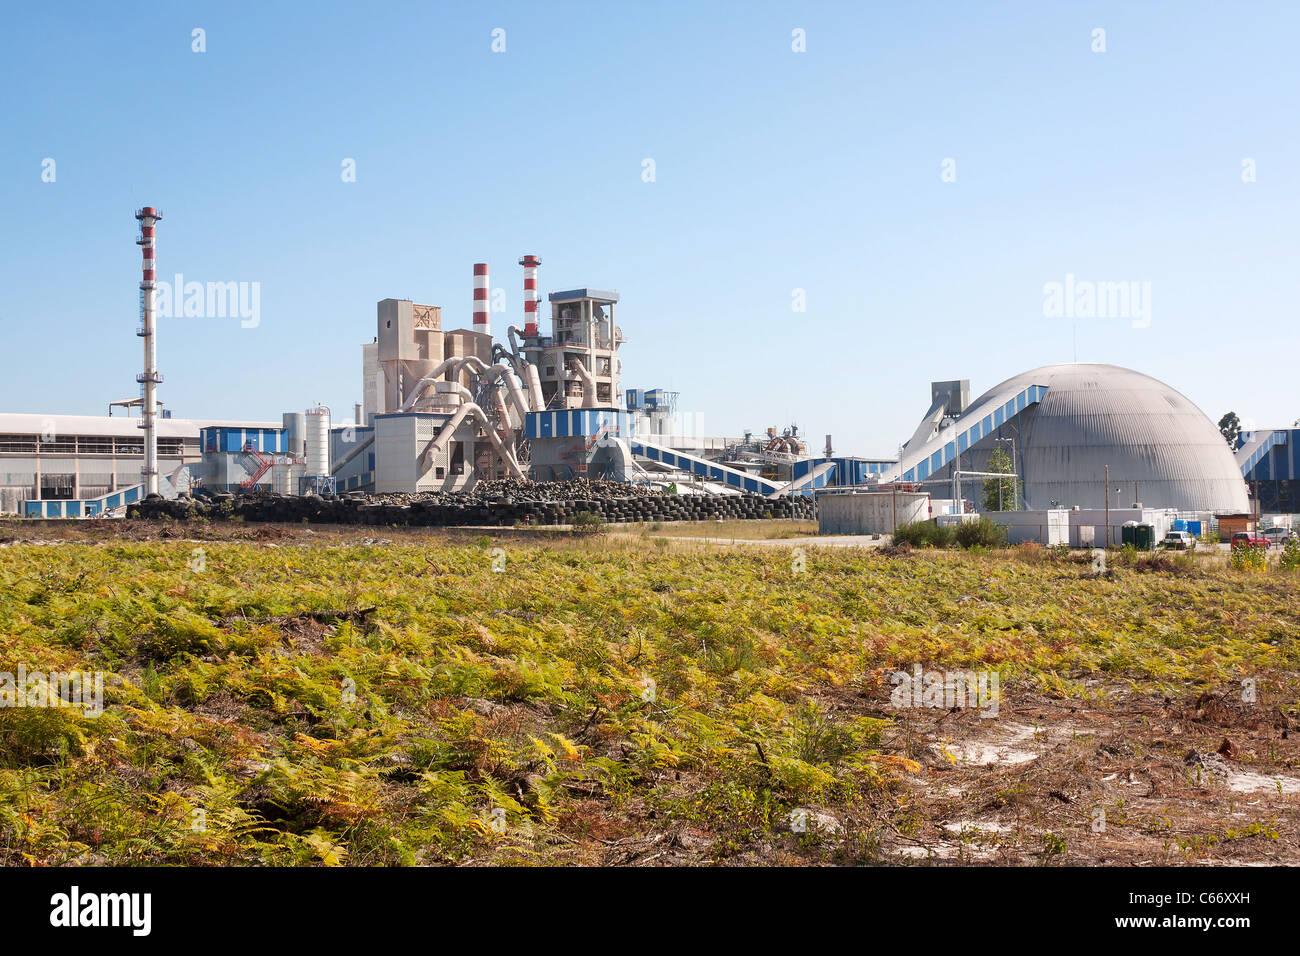 L'usine de caoutchouc intégré dans le paysage contre le ciel bleu Banque D'Images